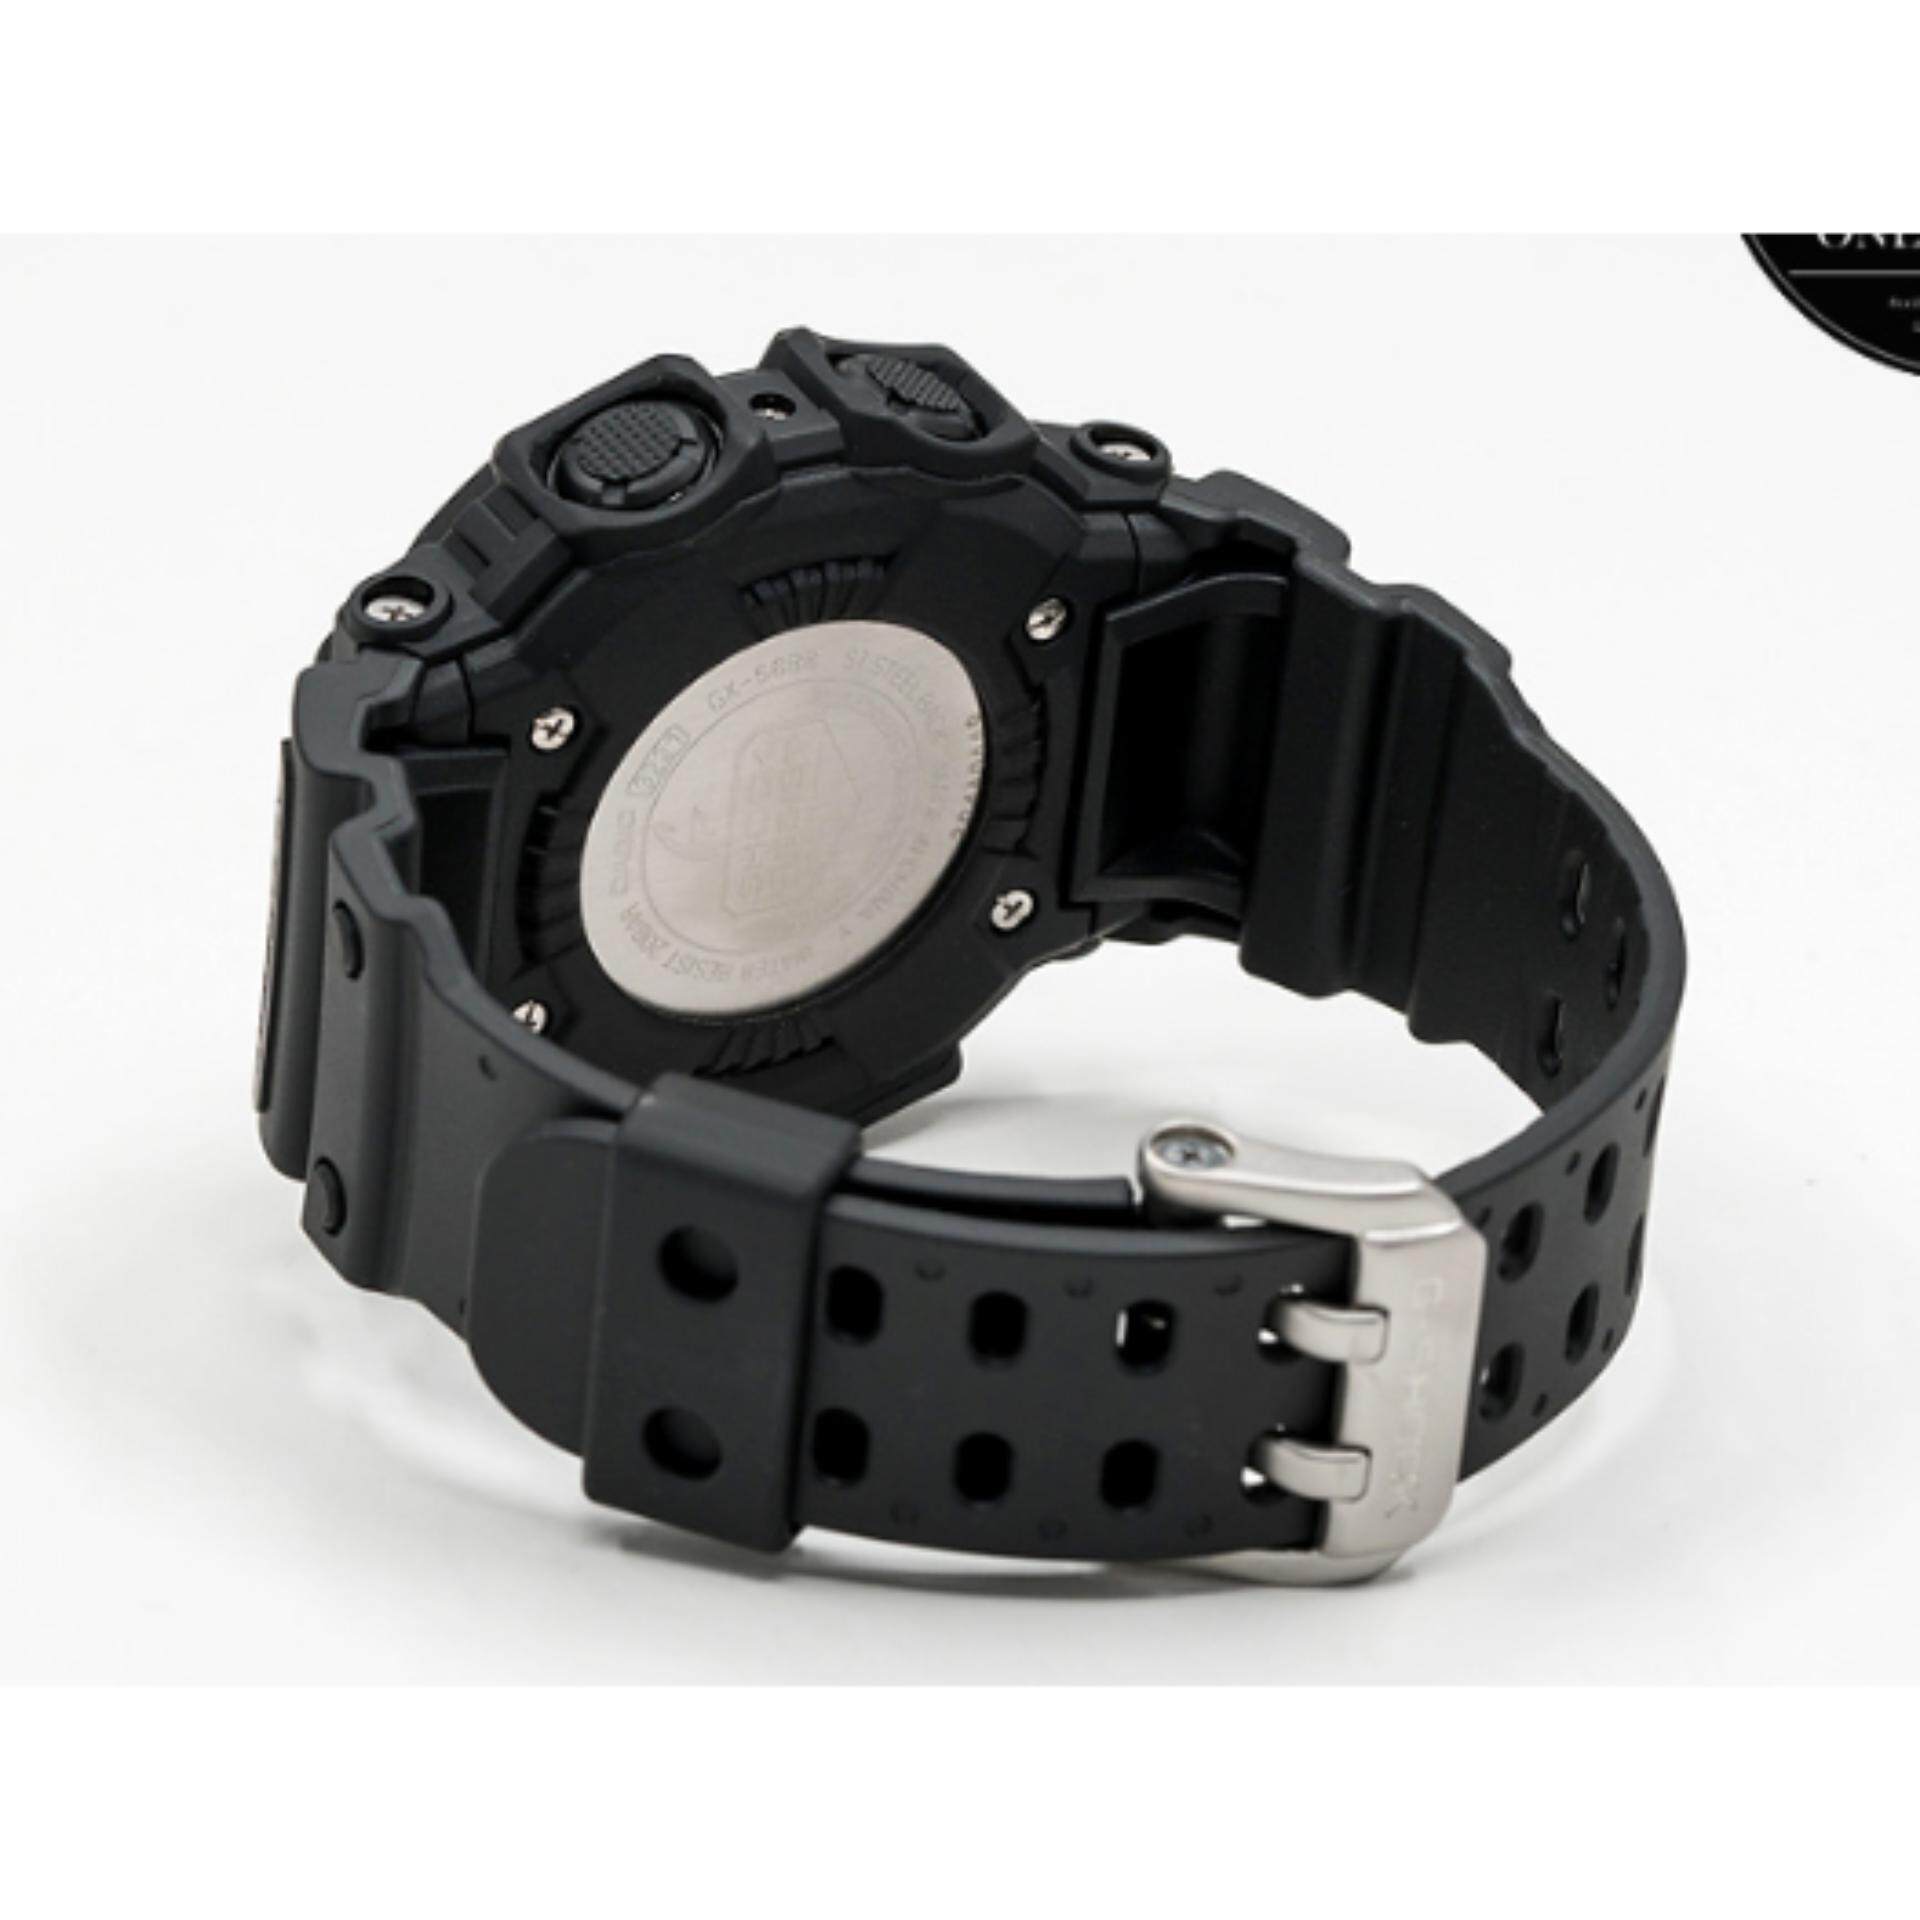 นาฬิกา รุ่น Casio G-Shock นาฬิกาข้อมือ นาฬิกาผู้ชาย สายเรซิ่น รุ่น Limited Edition GX-56BB-1DR // GX-56BB GX-56 สีดำ/ GWX-56-1 ( GXW-56-1 ) สีดำแดง ประกันศูนย์เซ็นทรัลCMG 1 ปี จากร้าน MIN WATCH